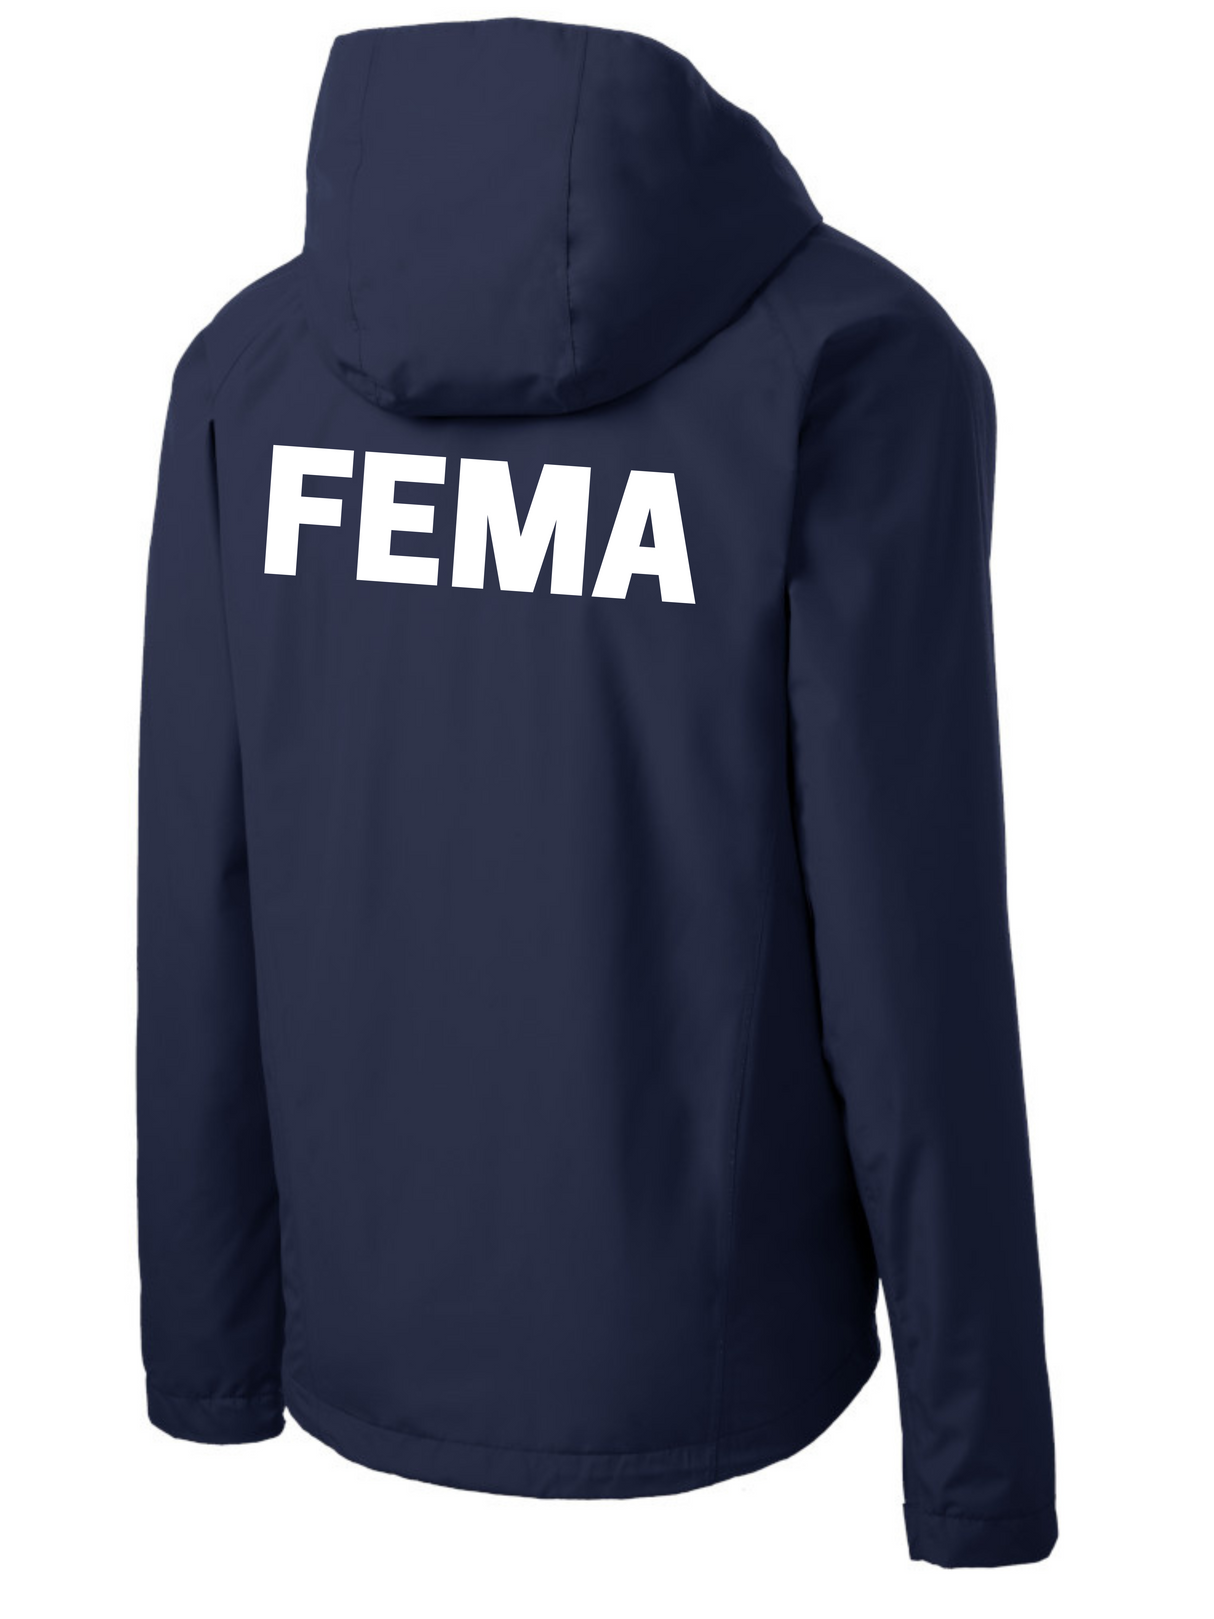 FEMA Agency Identifier Jacket - Rain Coat - FEDS Apparel